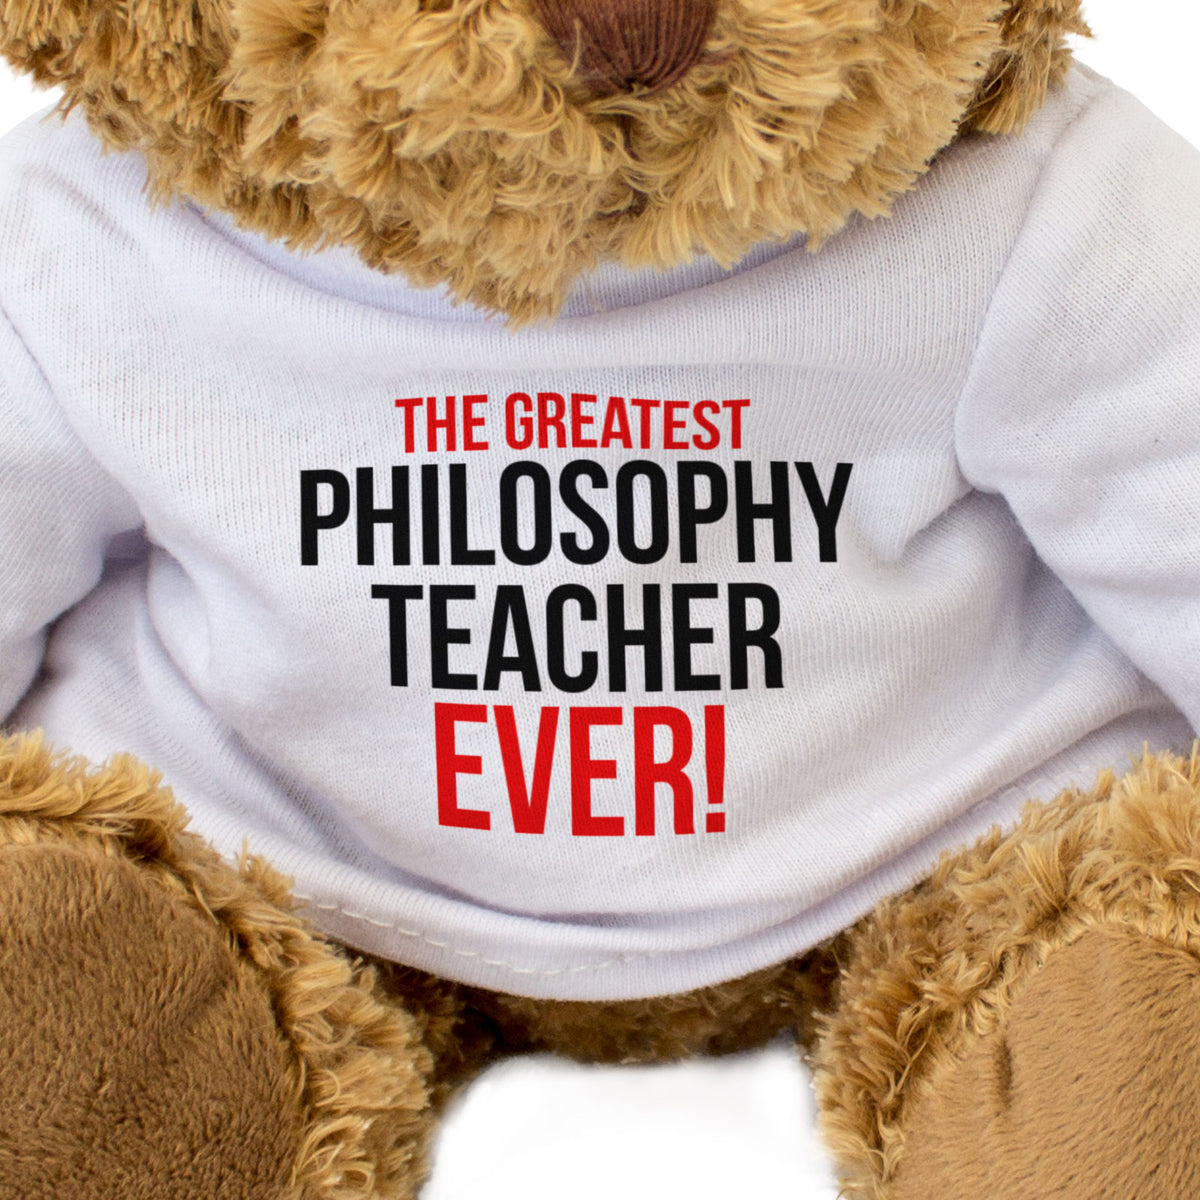 The Greatest Philosophy Teacher Ever - Teddy Bear